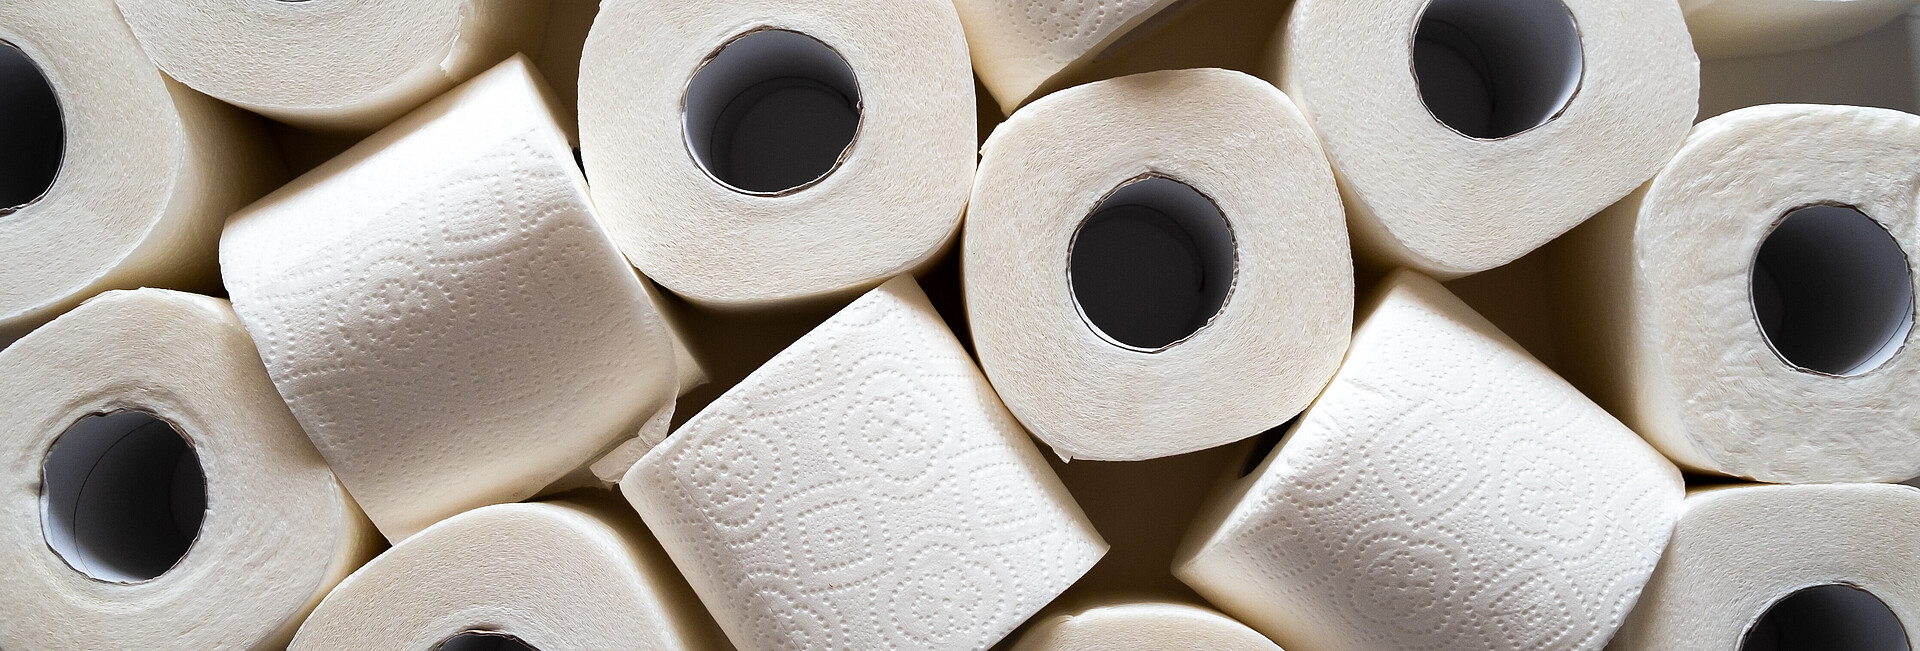 Toilettenpapierrollen auf einem Haufen